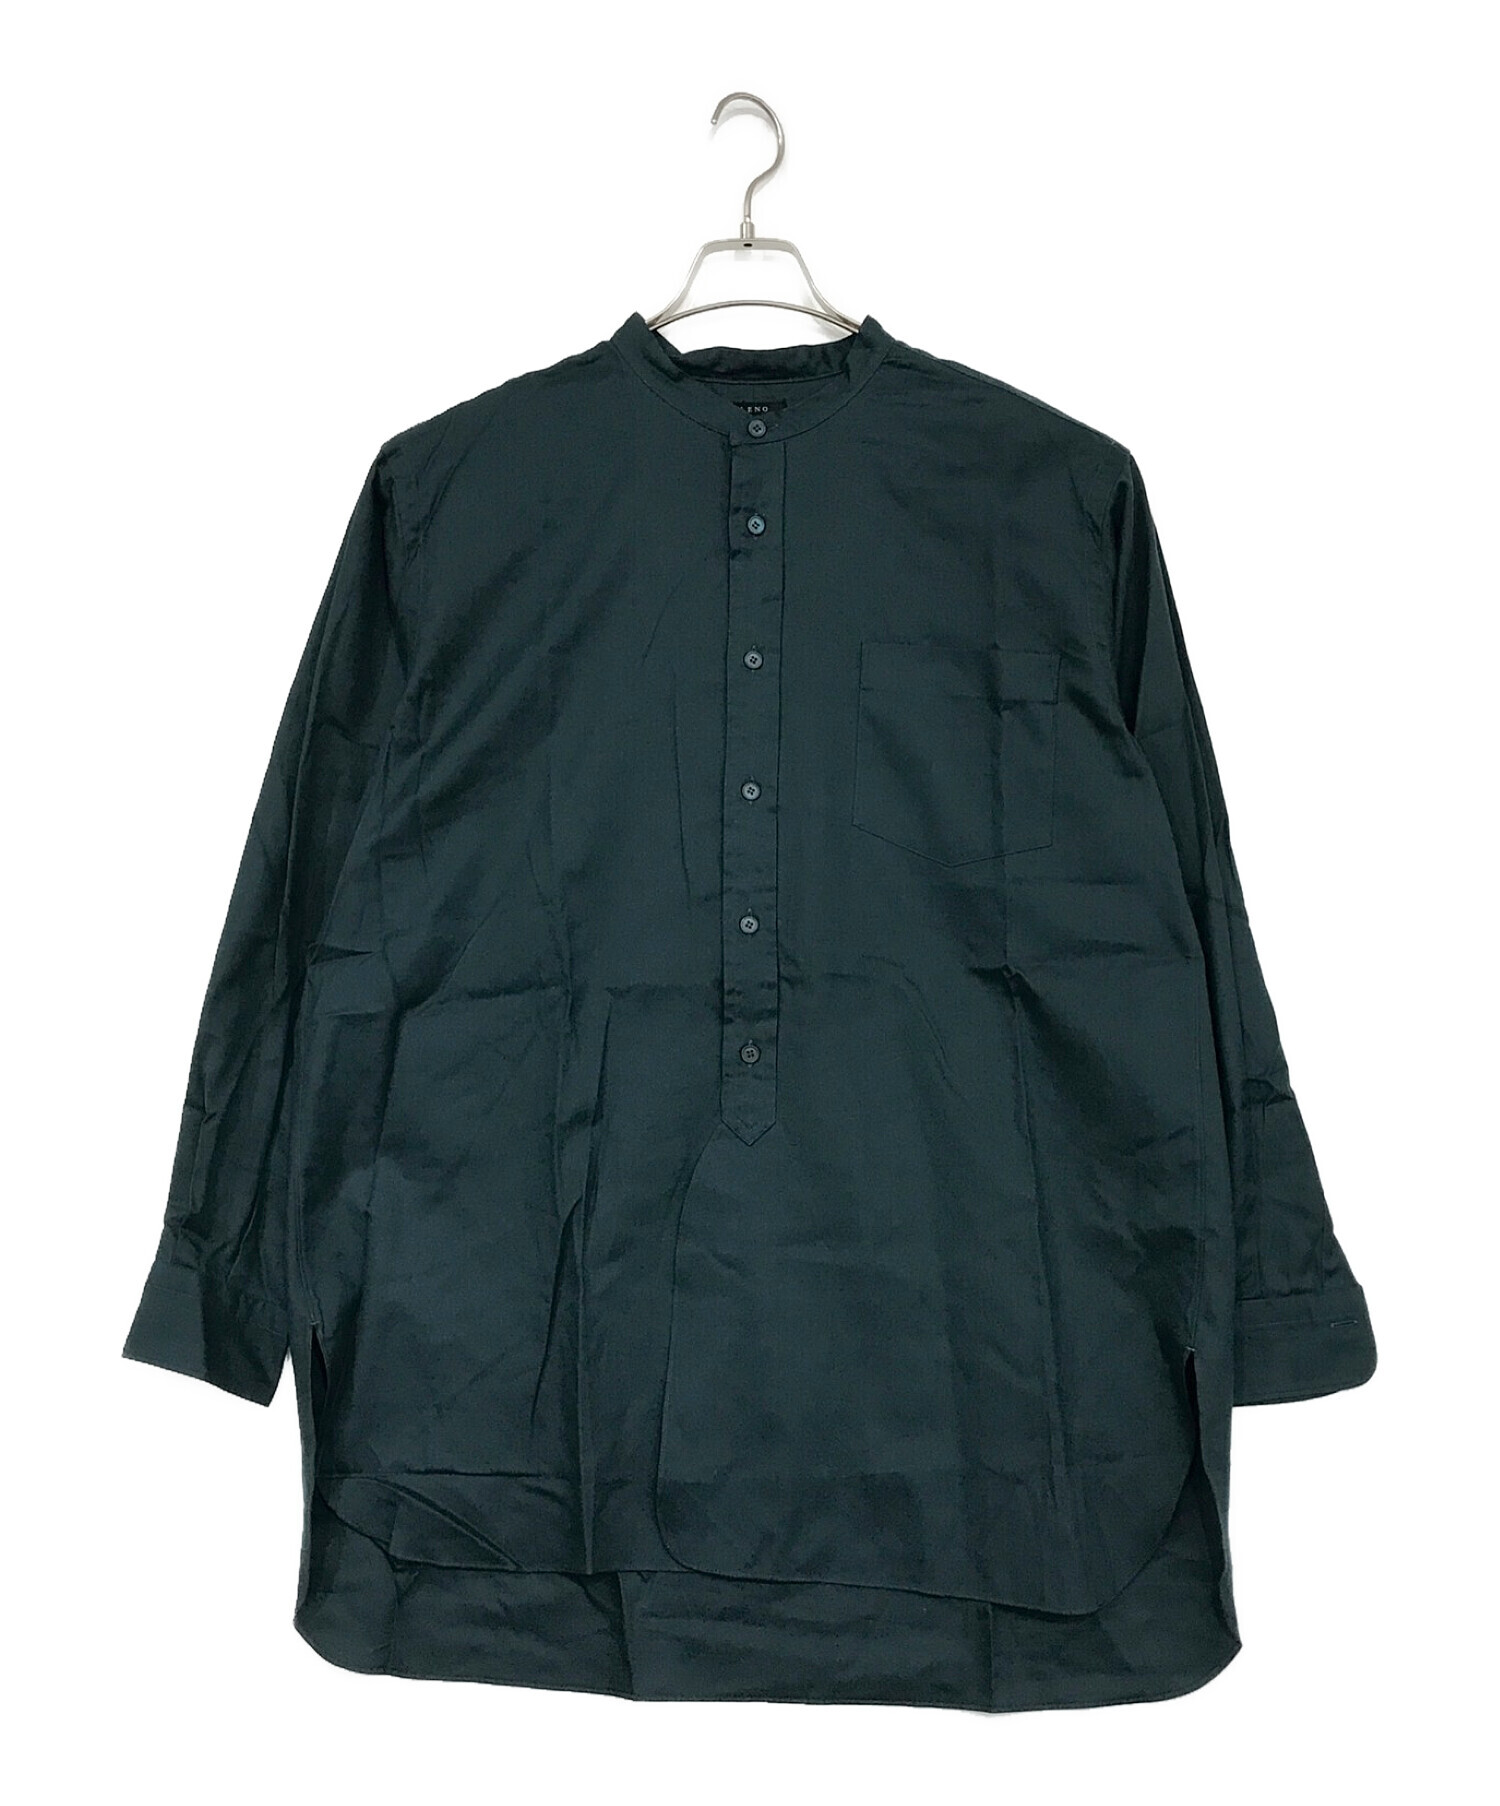 leno (リノ) バンドカラーシャツ グリーン サイズ:SIZE 1 未使用品